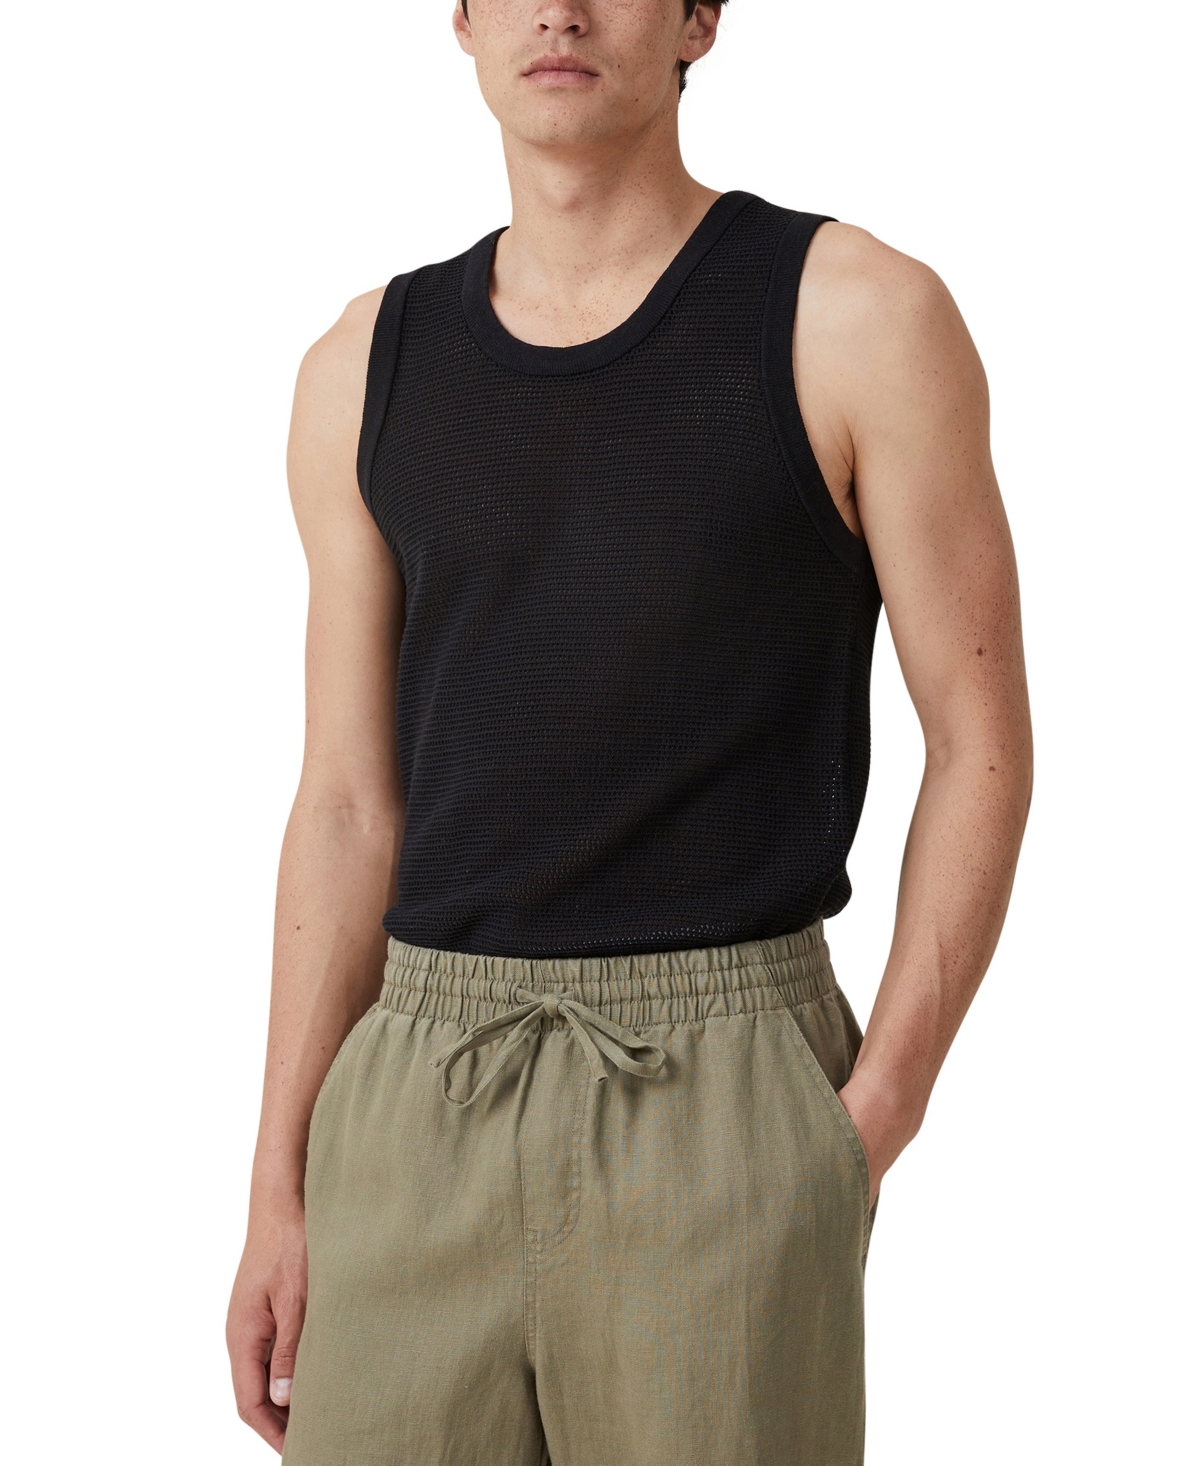 Men's Knit Tank Top - Black